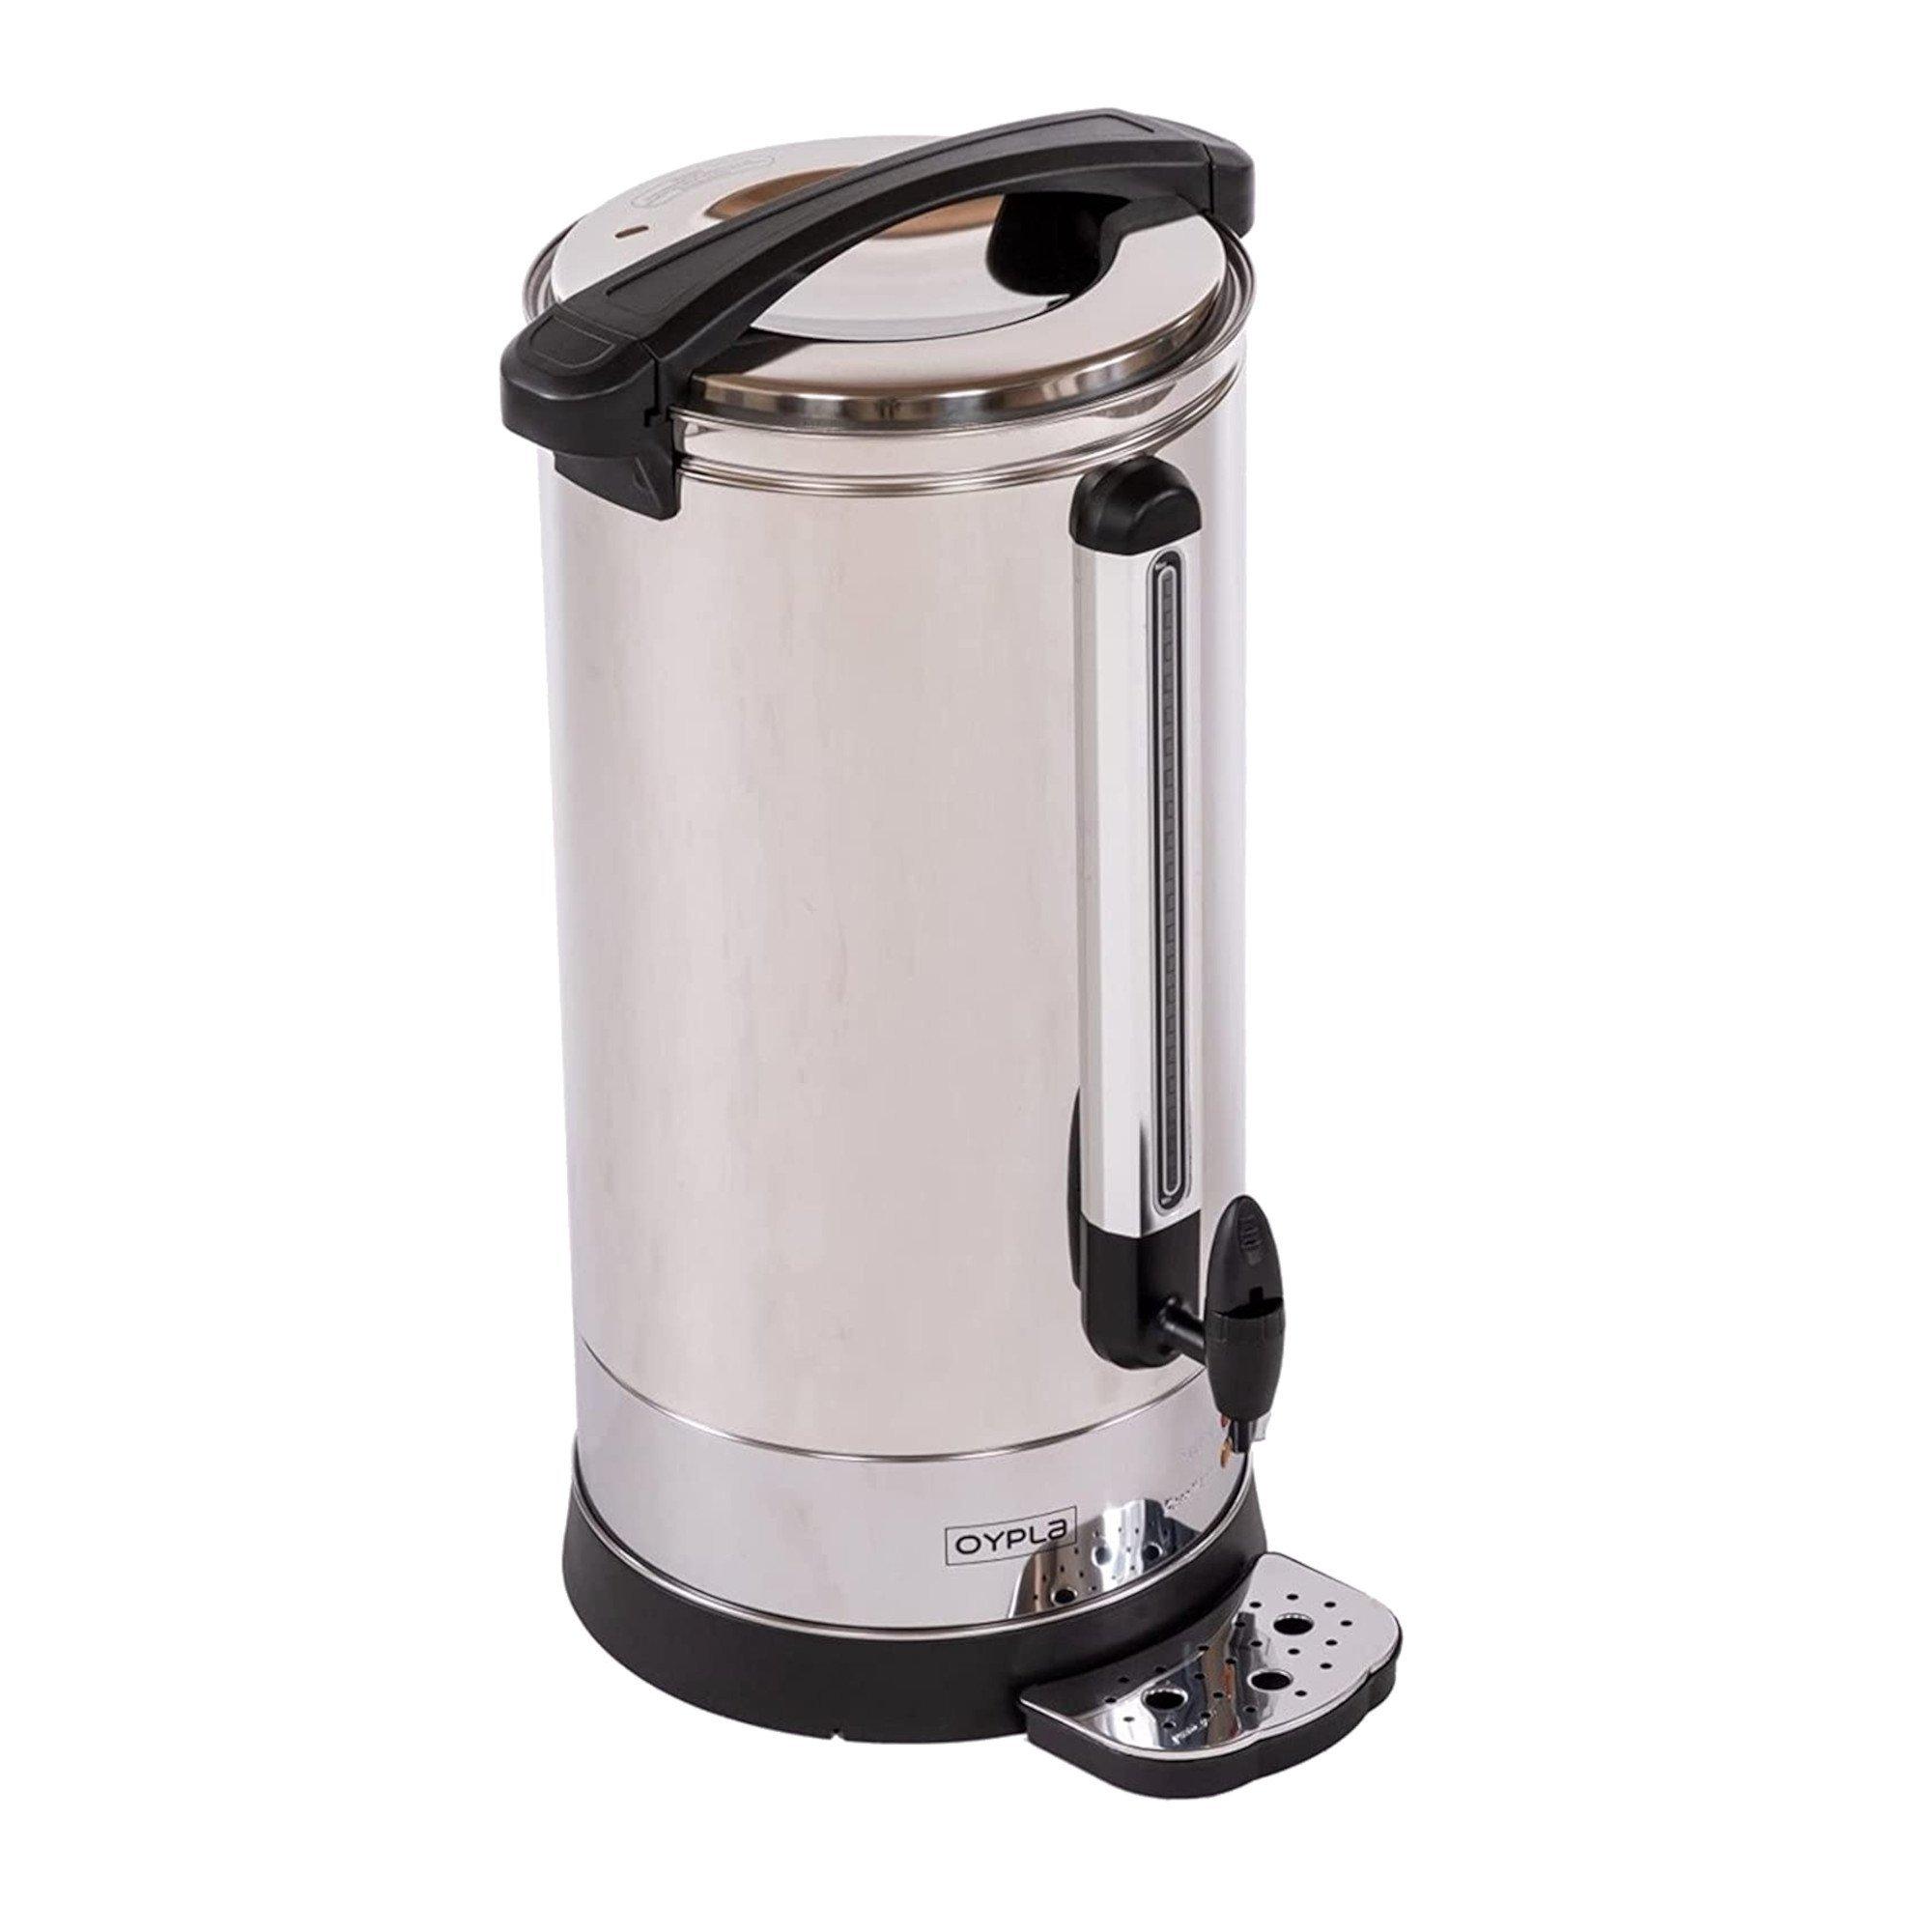 30L Catering Hot Water Boiler Tea Urn